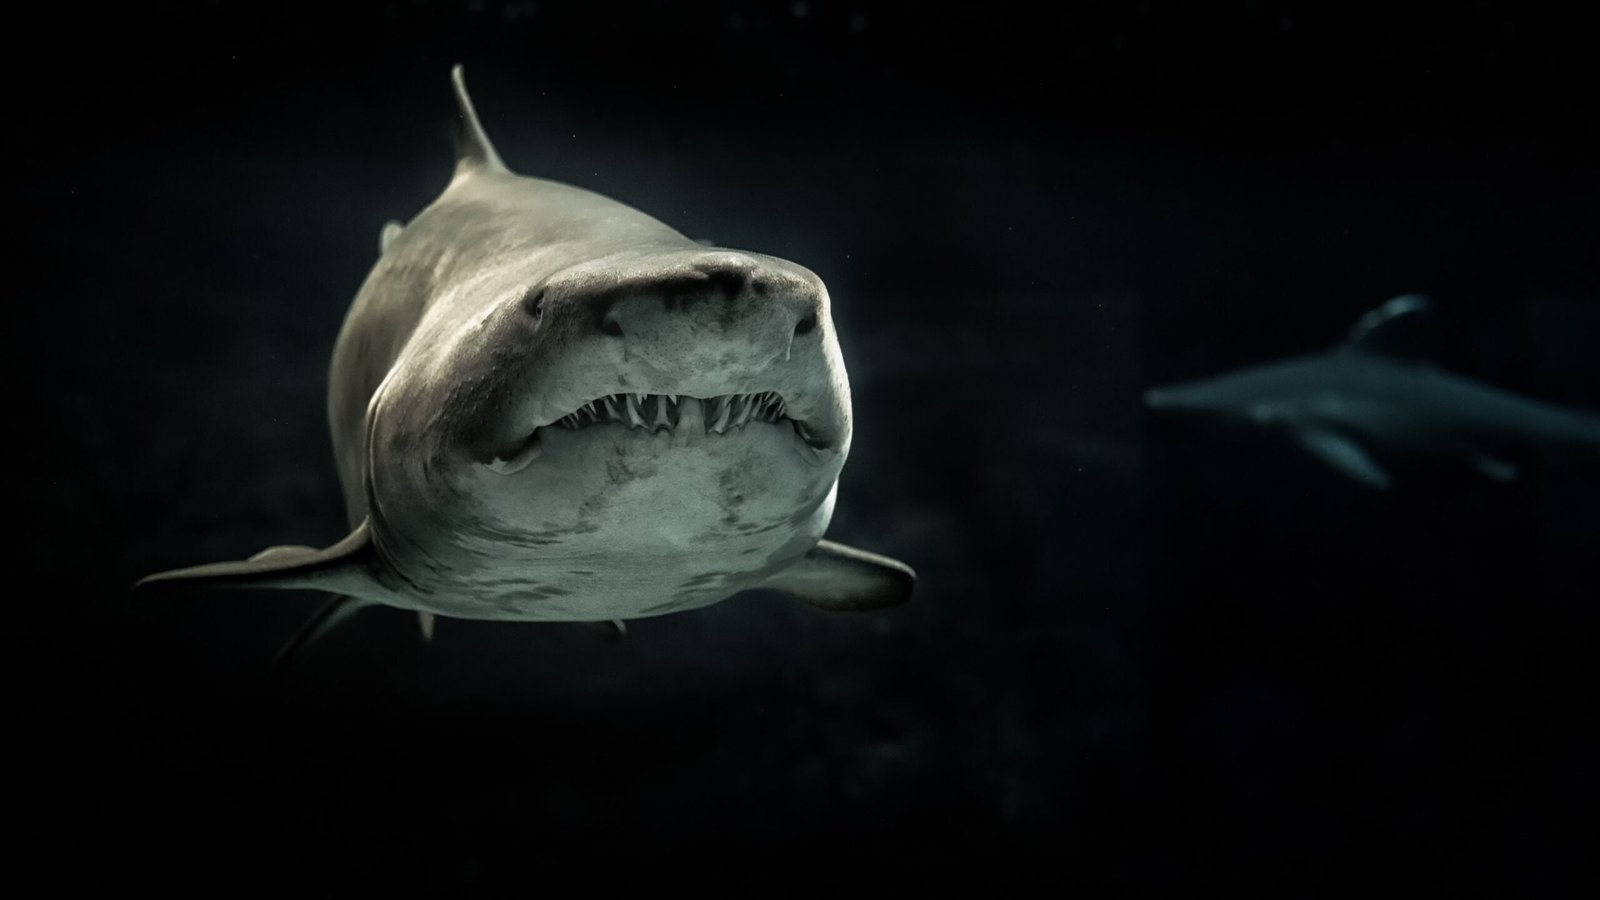 A shark with big teeth